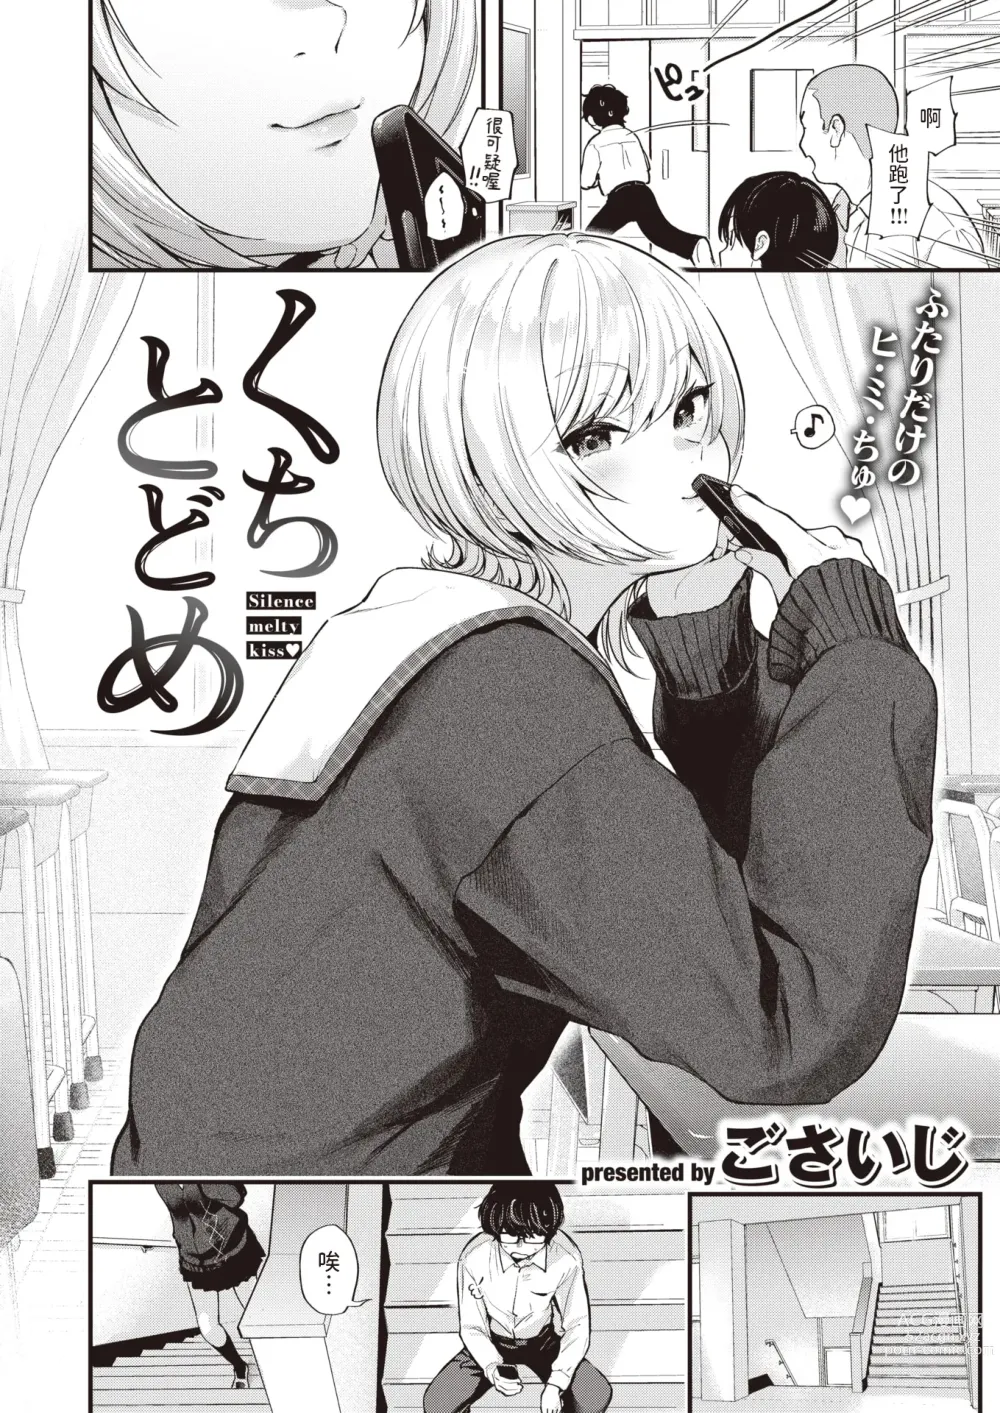 Page 2 of manga Kuchi Todome - Silence melty kiss